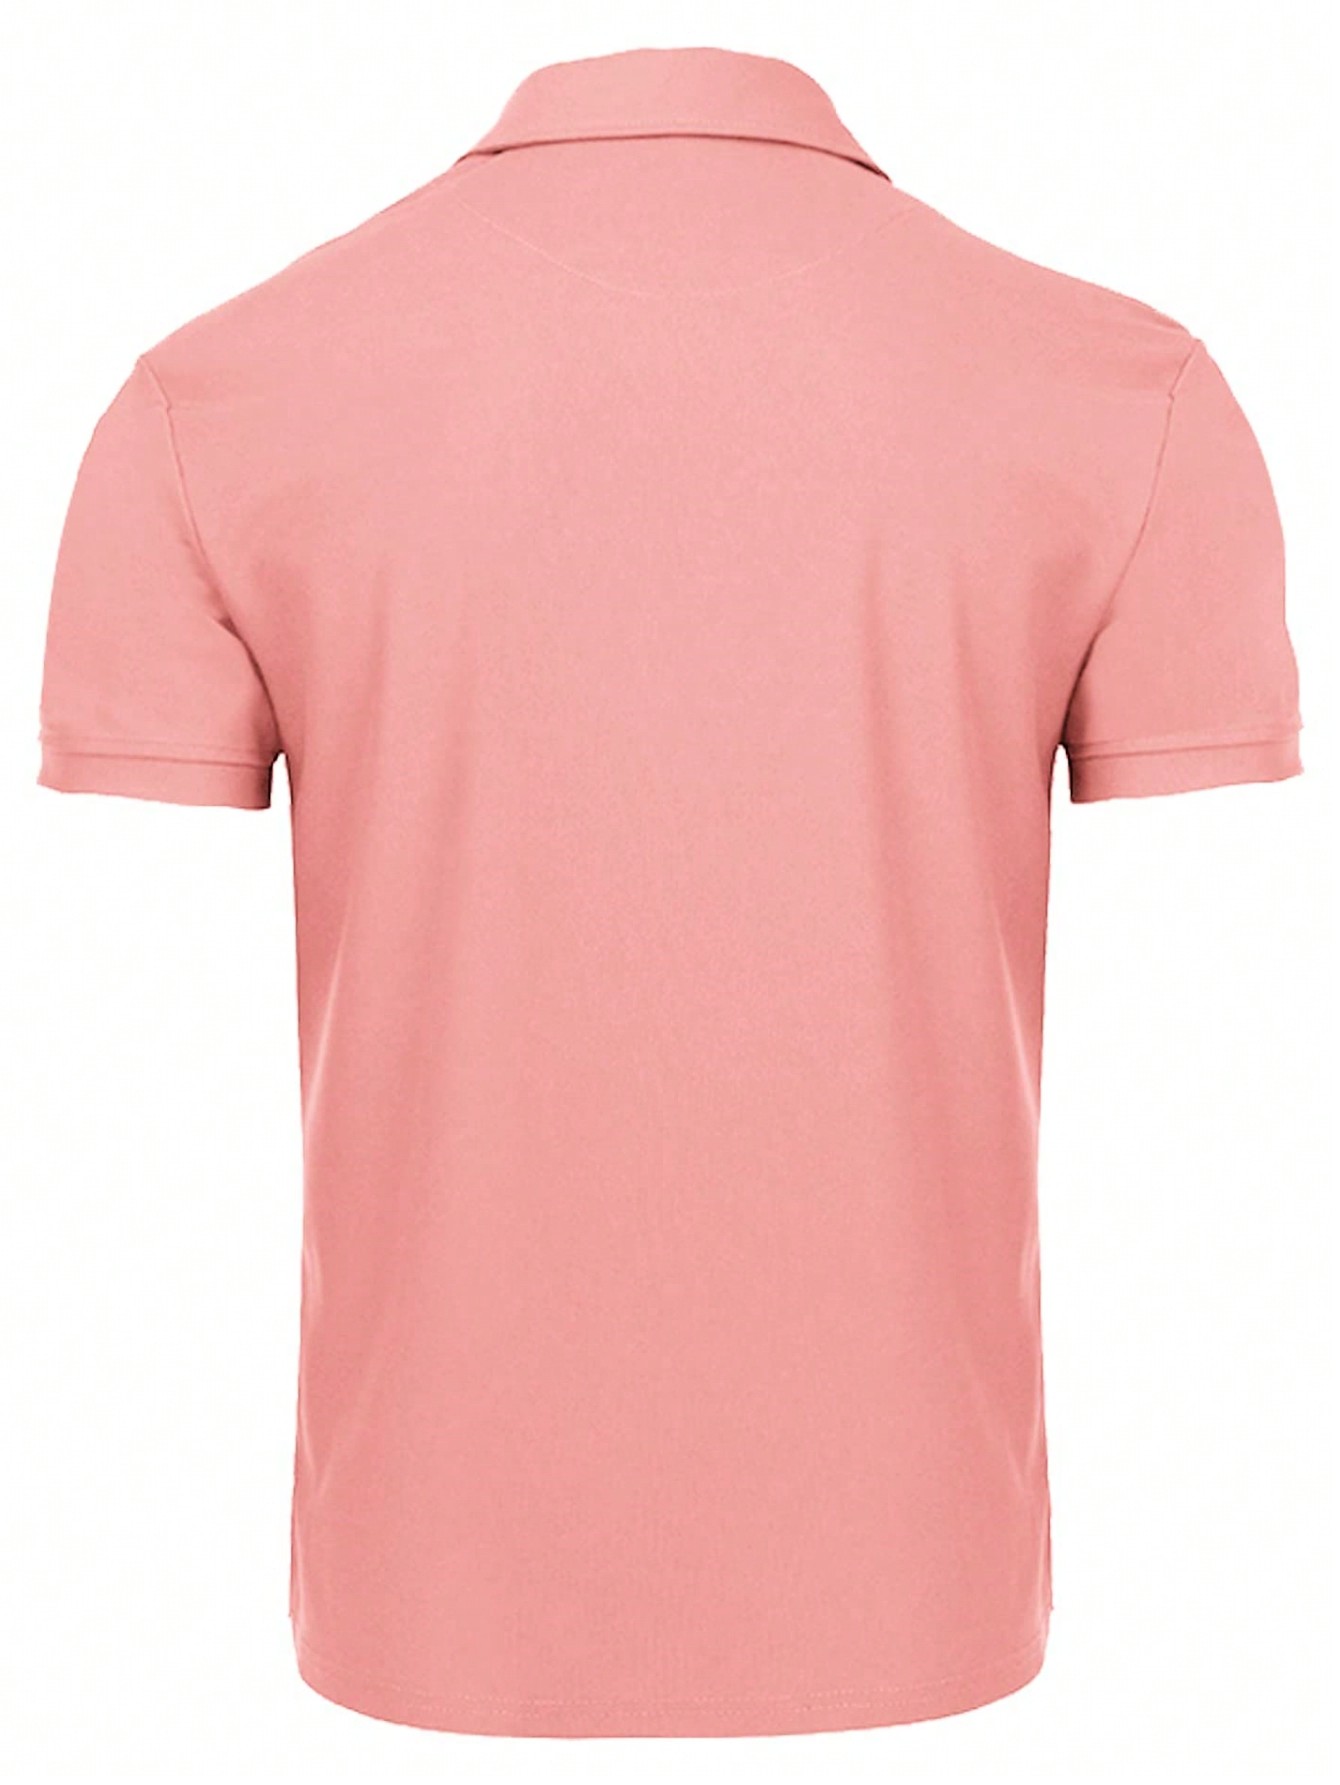 Мужская рубашка поло с коротким рукавом для отдыха, арбуз розовый рубашка поло prescott мужская джинс